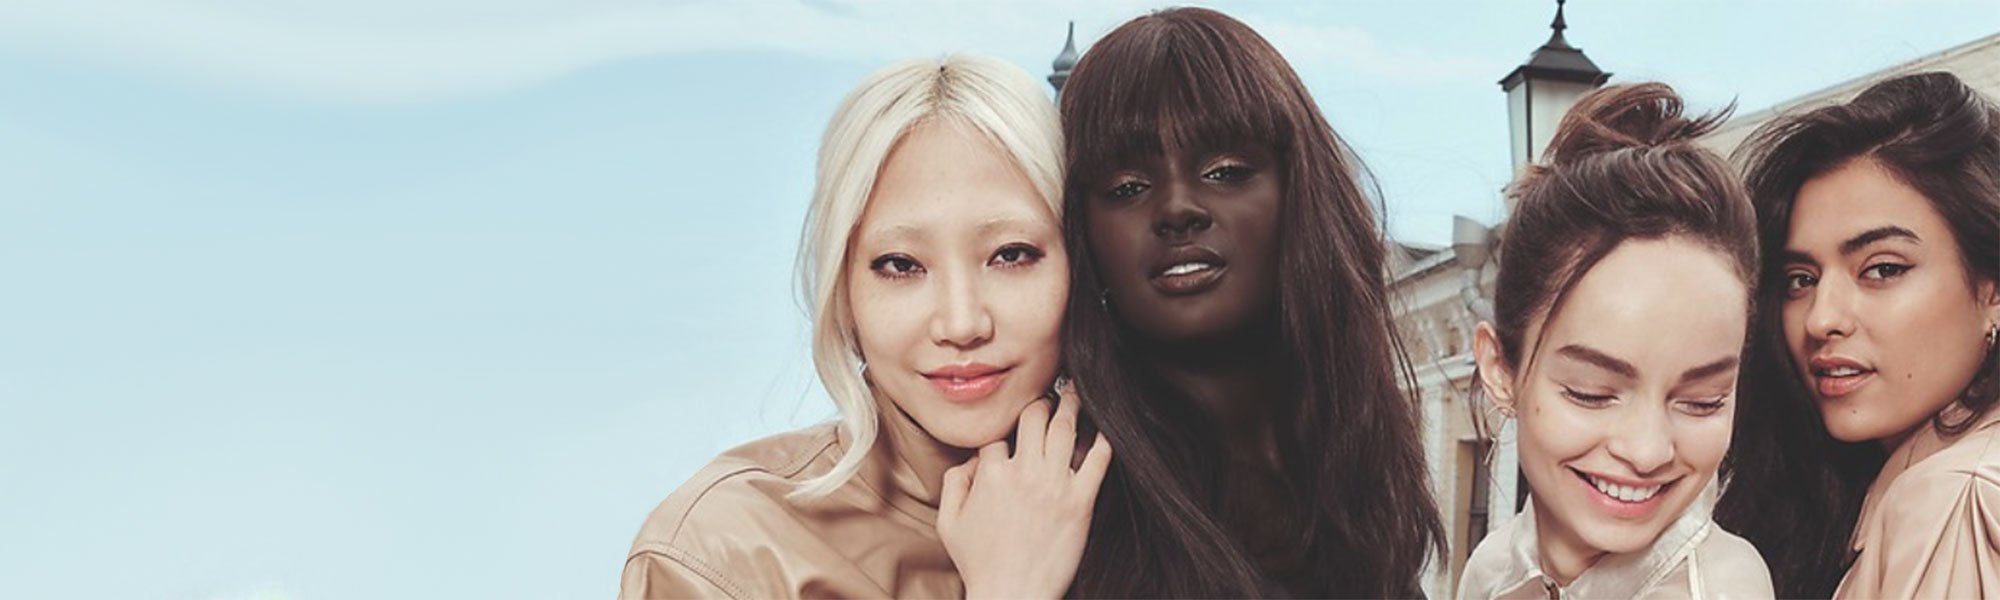 Elige tu tono de maquillaje ideal entre los productos de larga duración de la gama Infalible de L’Oréal Paris.